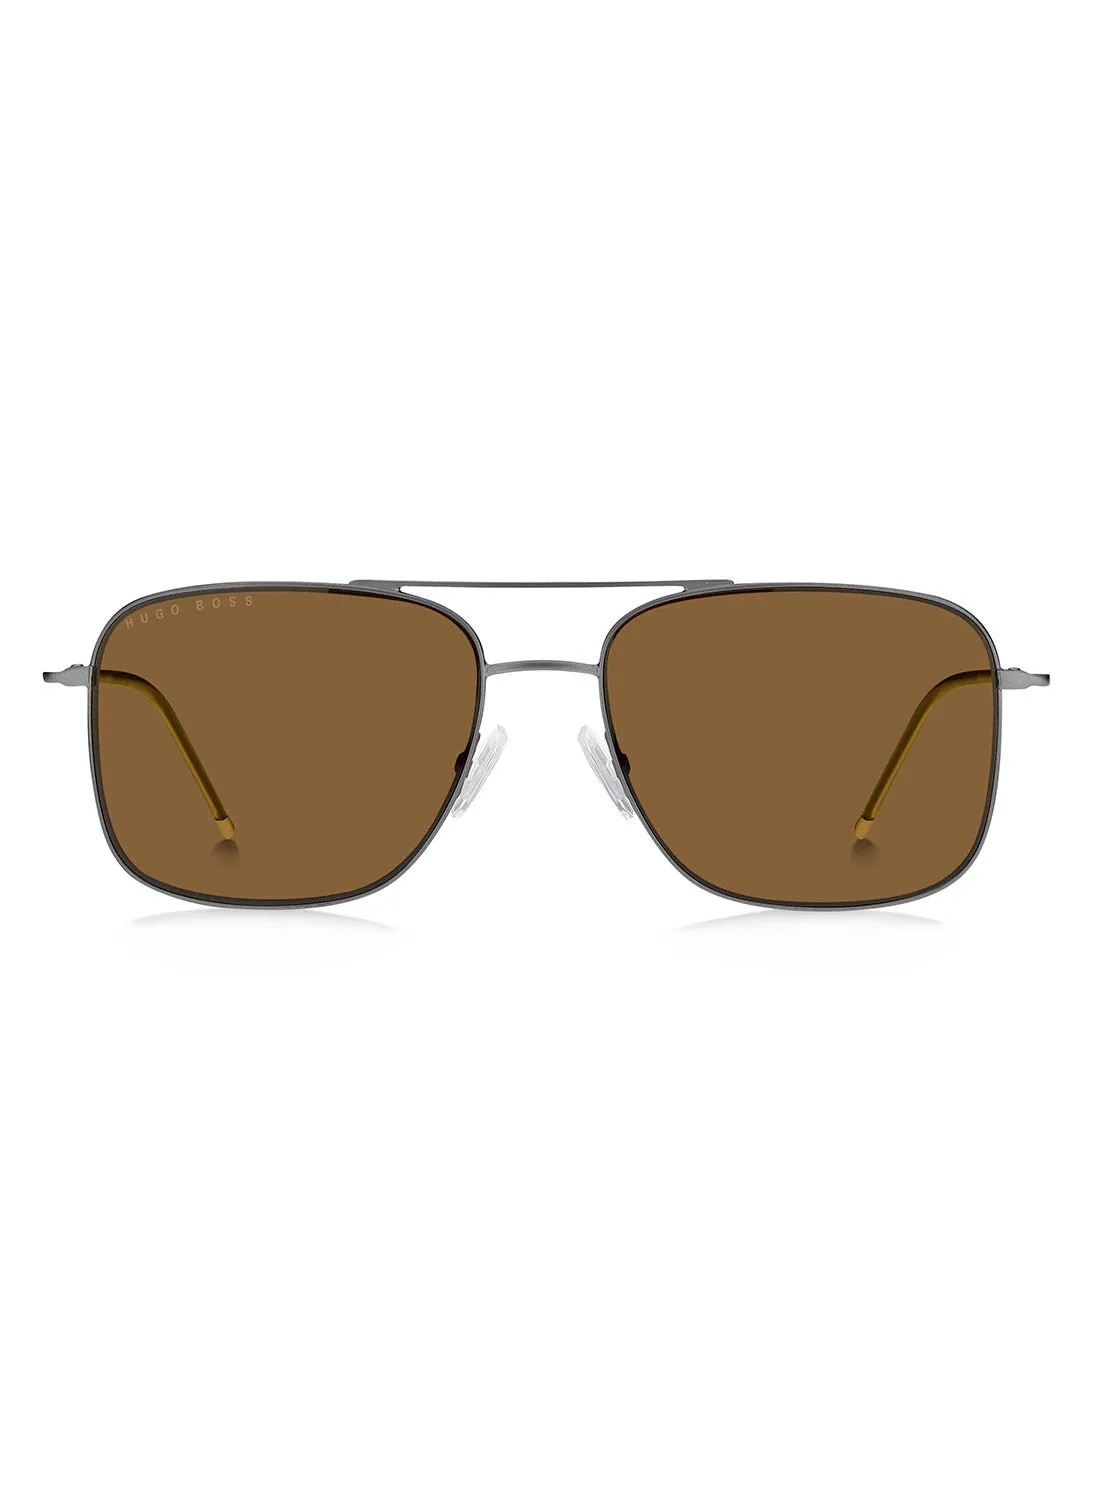 HUGO BOSS Rectangular / Square Sunglasses BOSS 1310/S MTDK RUTH 58